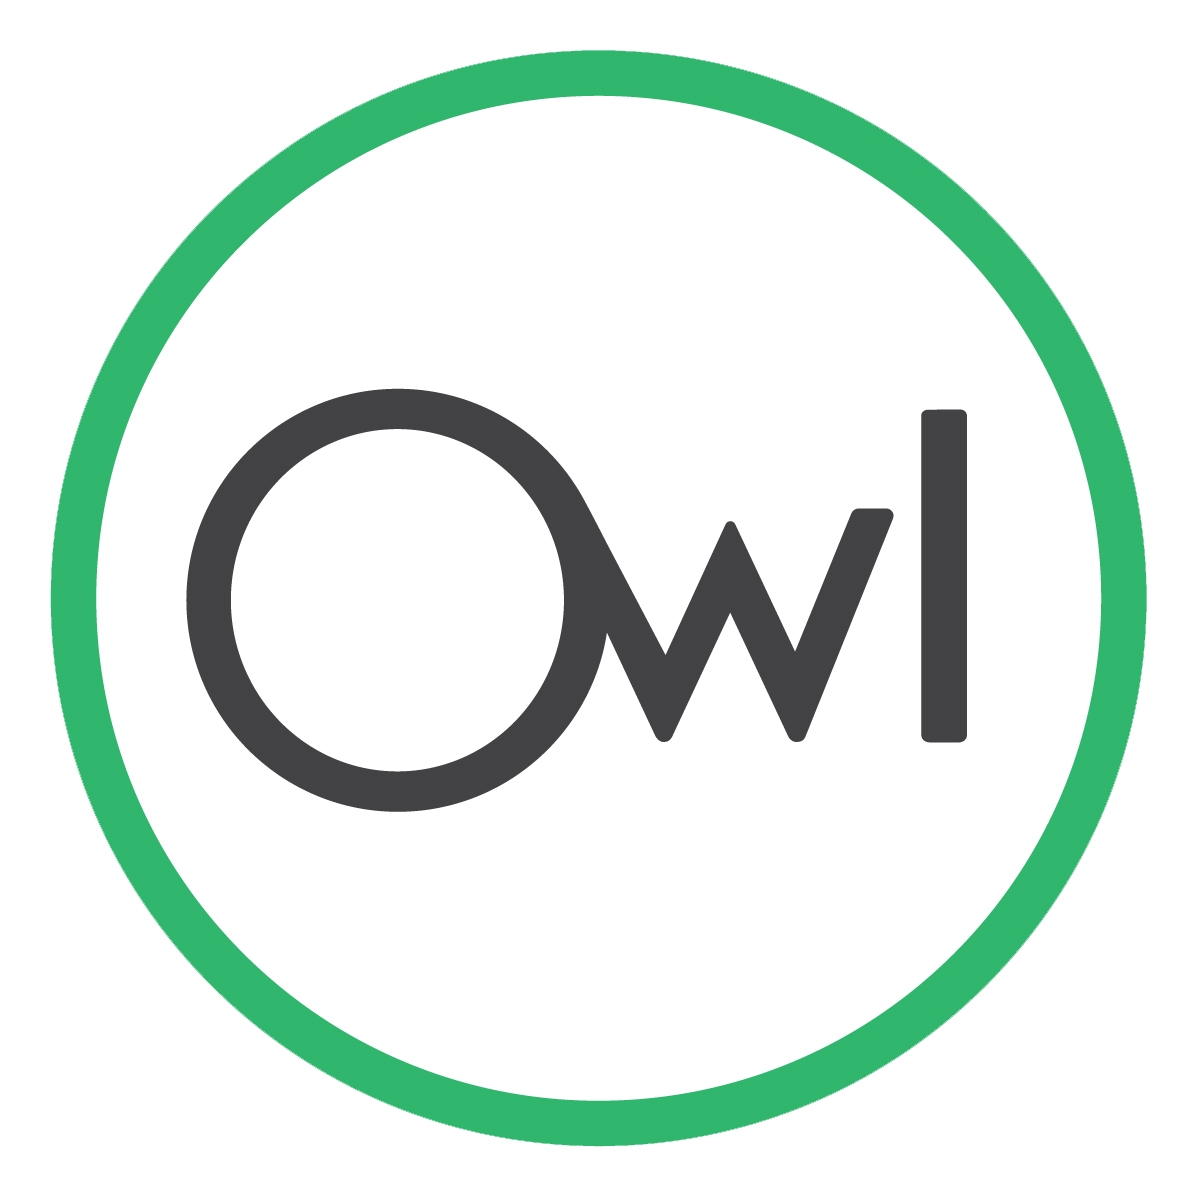 Owl Car Cam